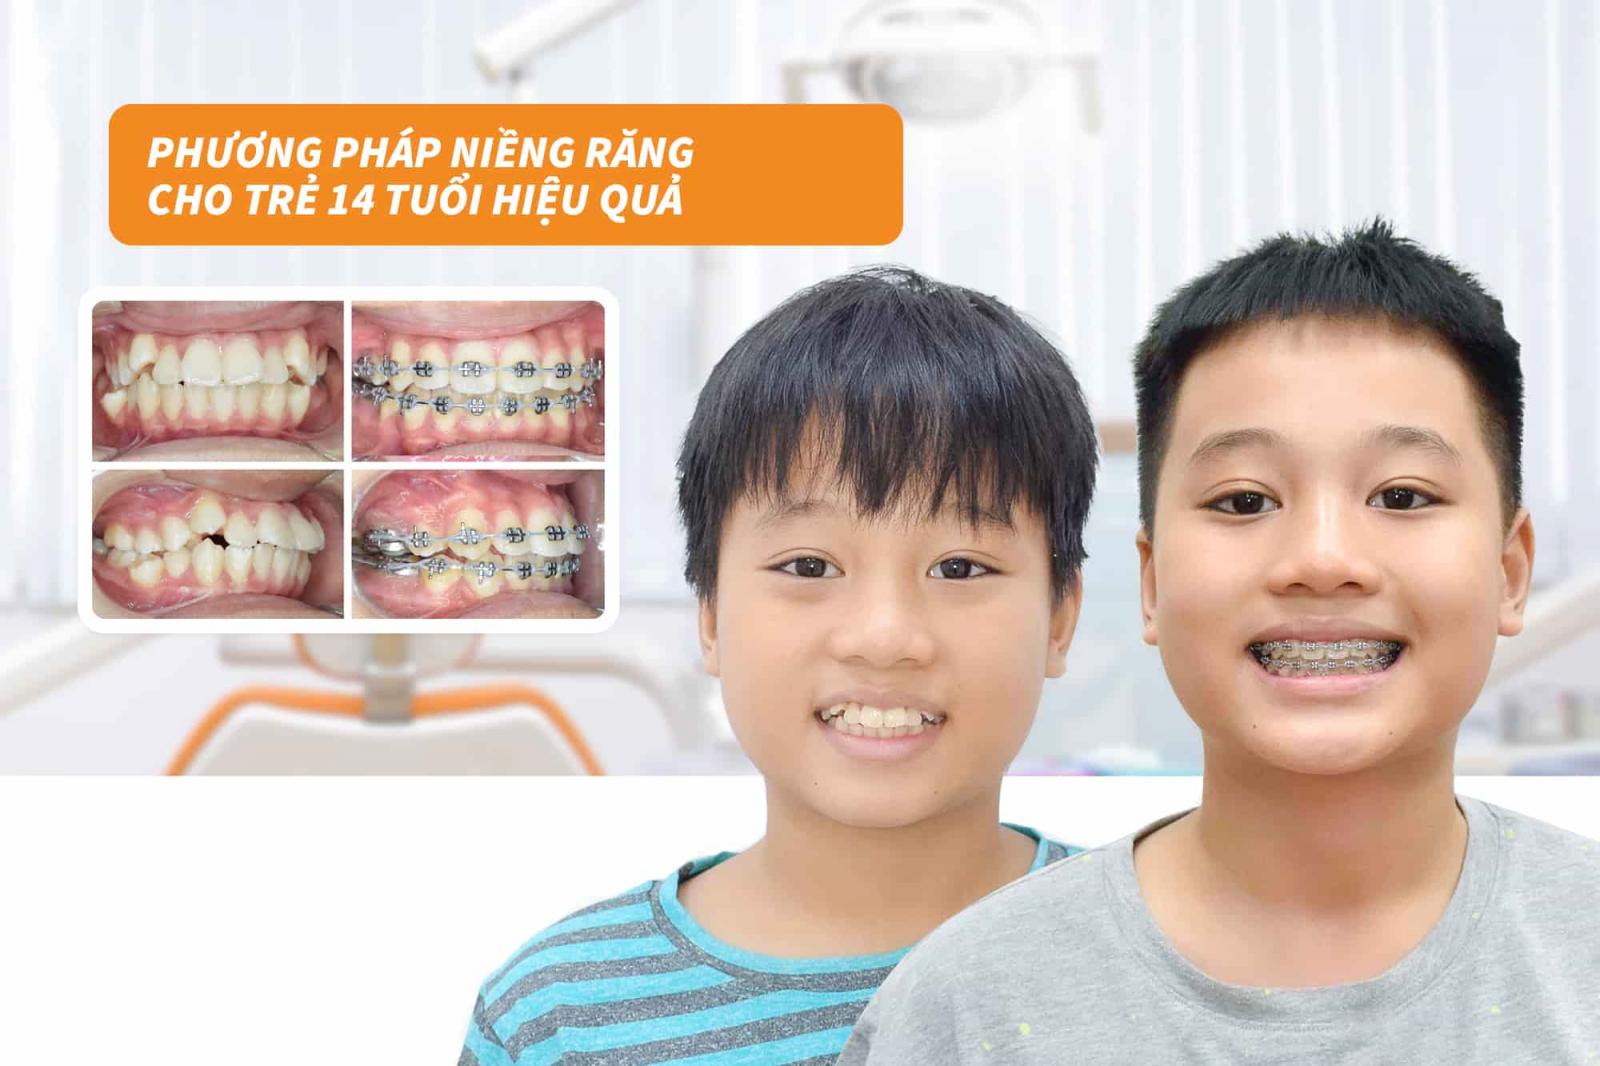 Phương pháp niềng răng cho trẻ 14 tuổi hiệu quả